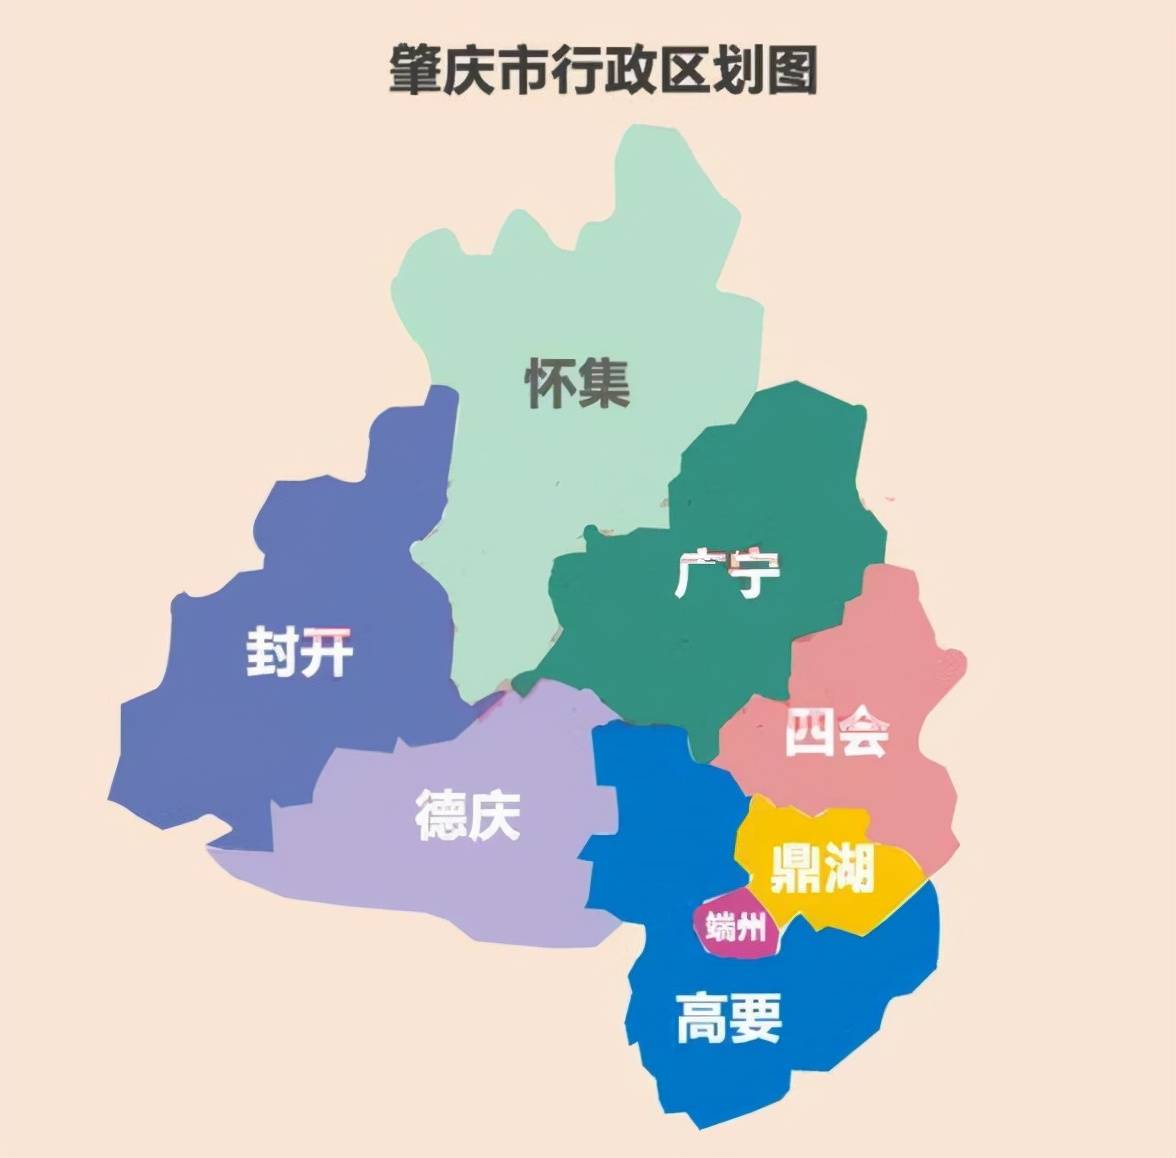 广东省的区划调整21个地级市之一肇庆市为何有8个区县